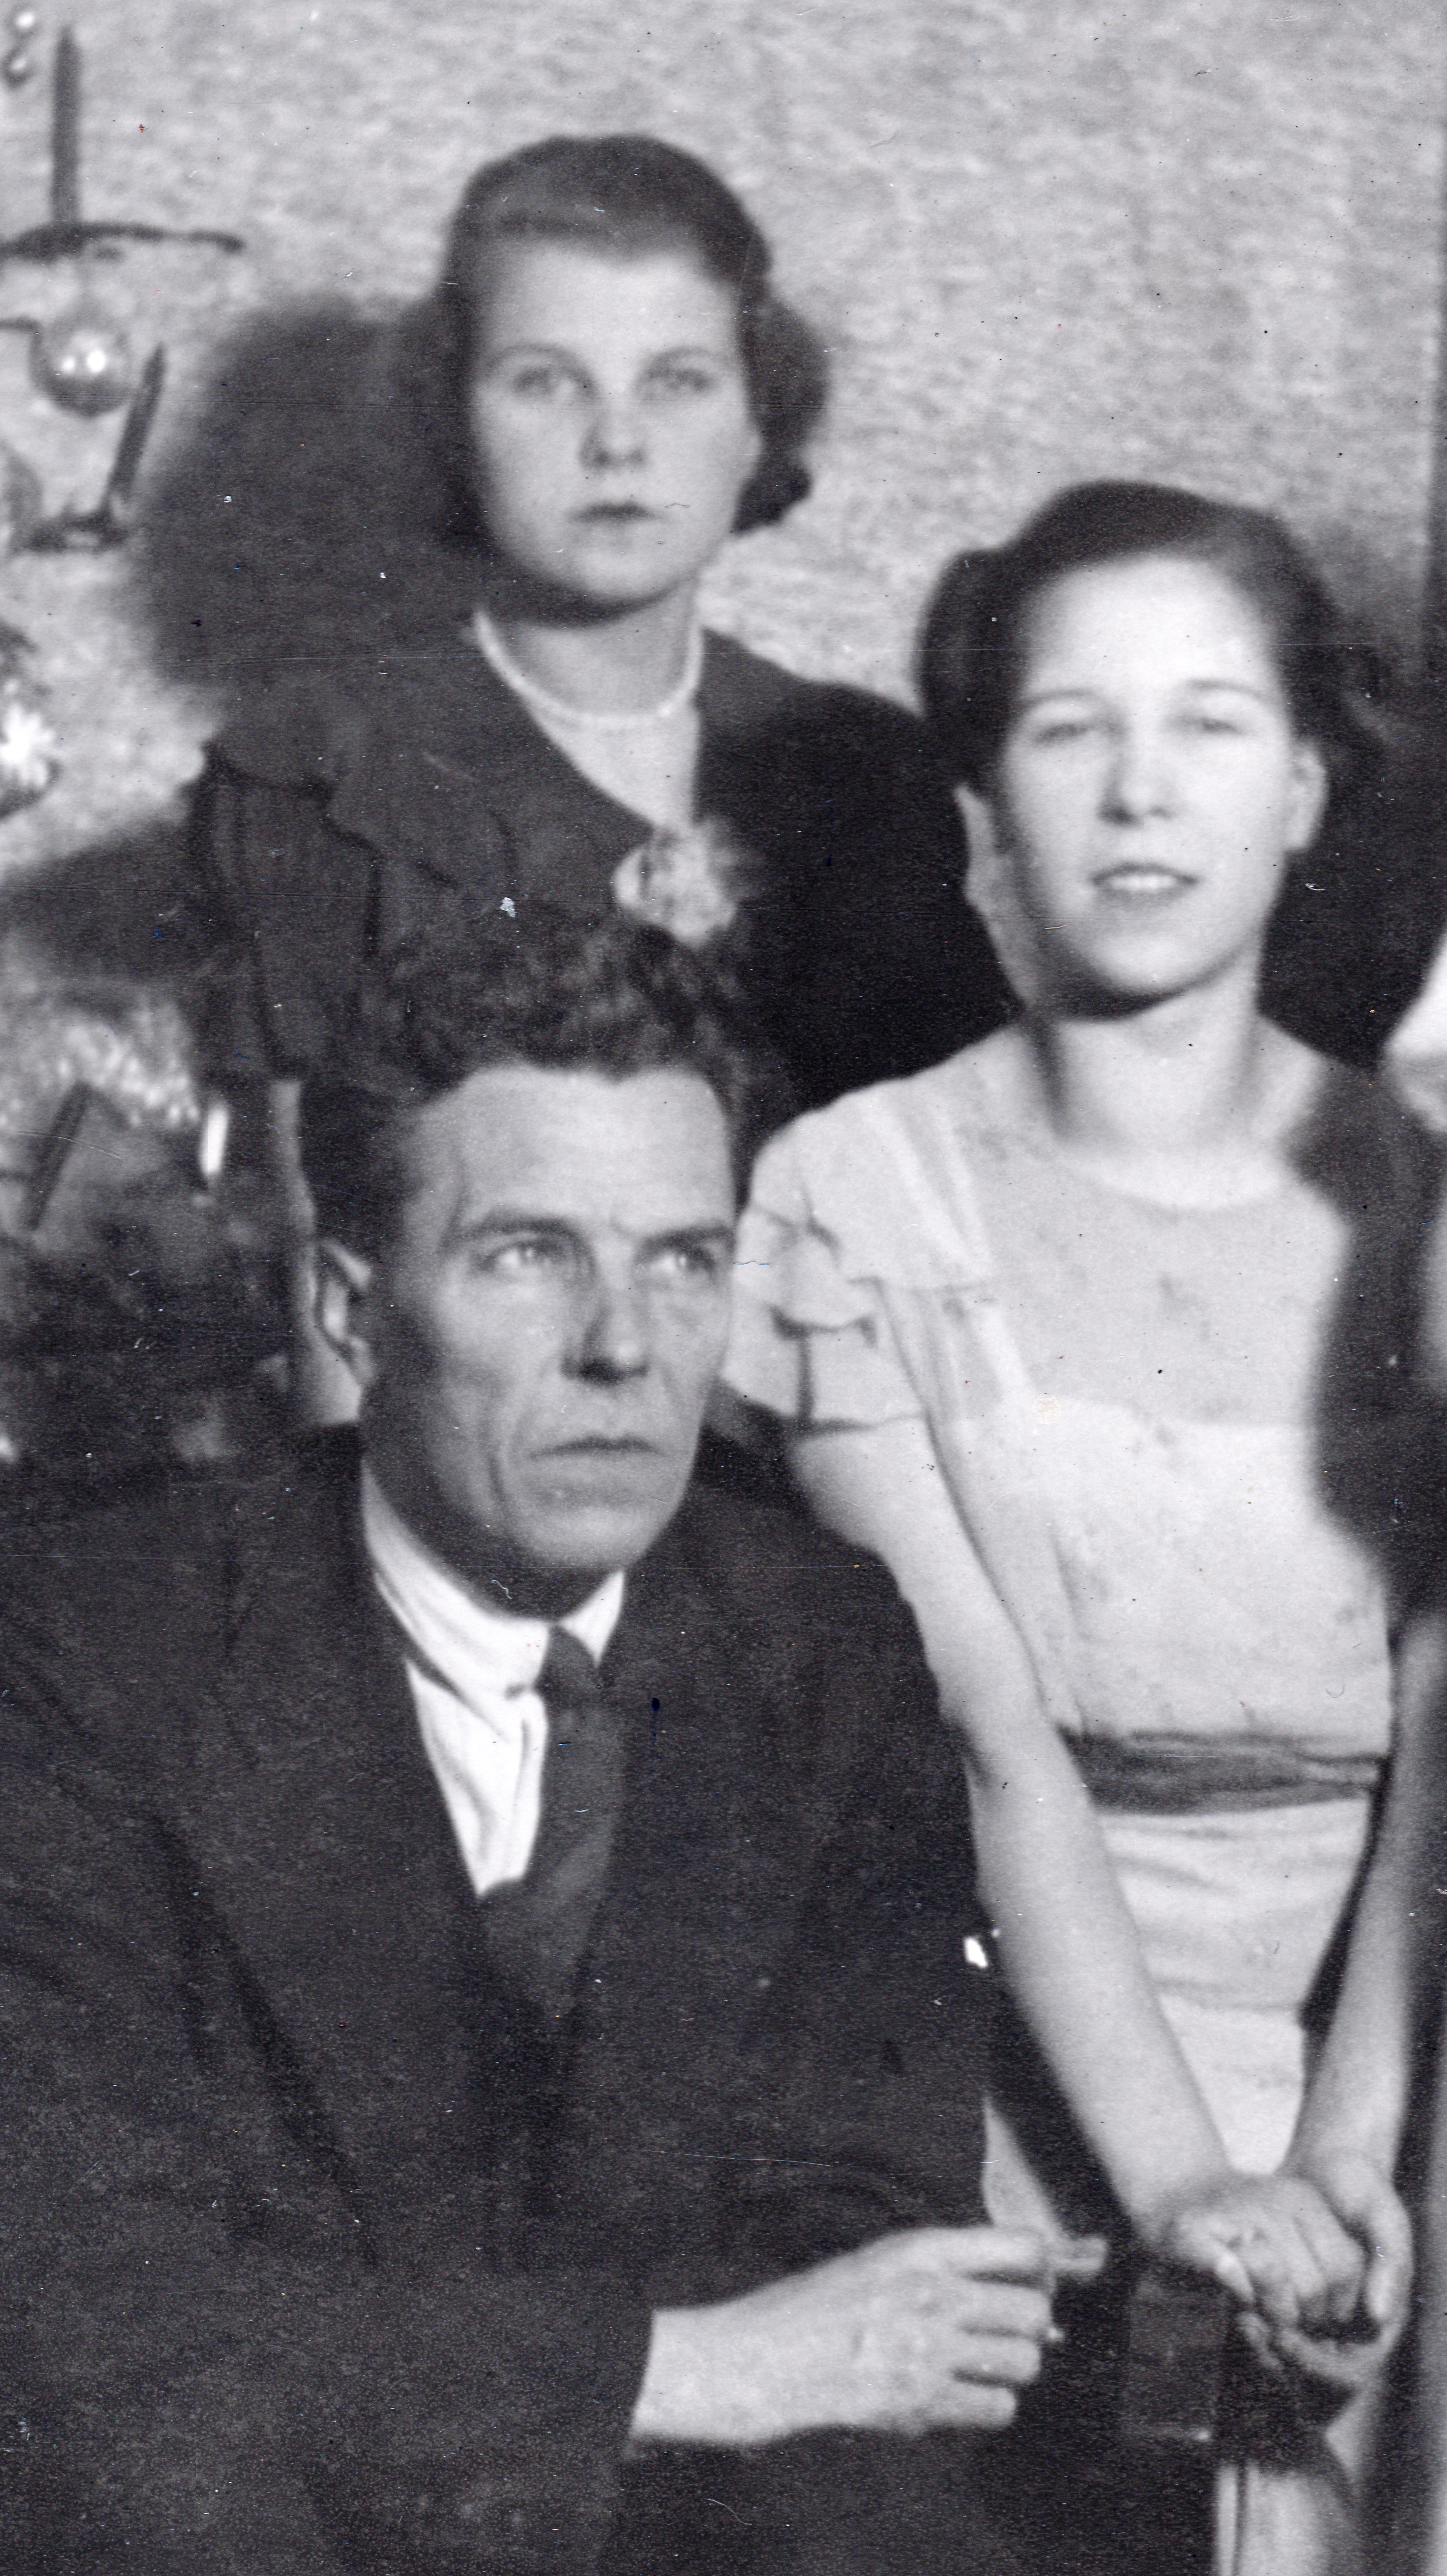 Joops Großvater mit seiner Tante Nelly (oben in der Mitte) und Willy im Jahr 1940